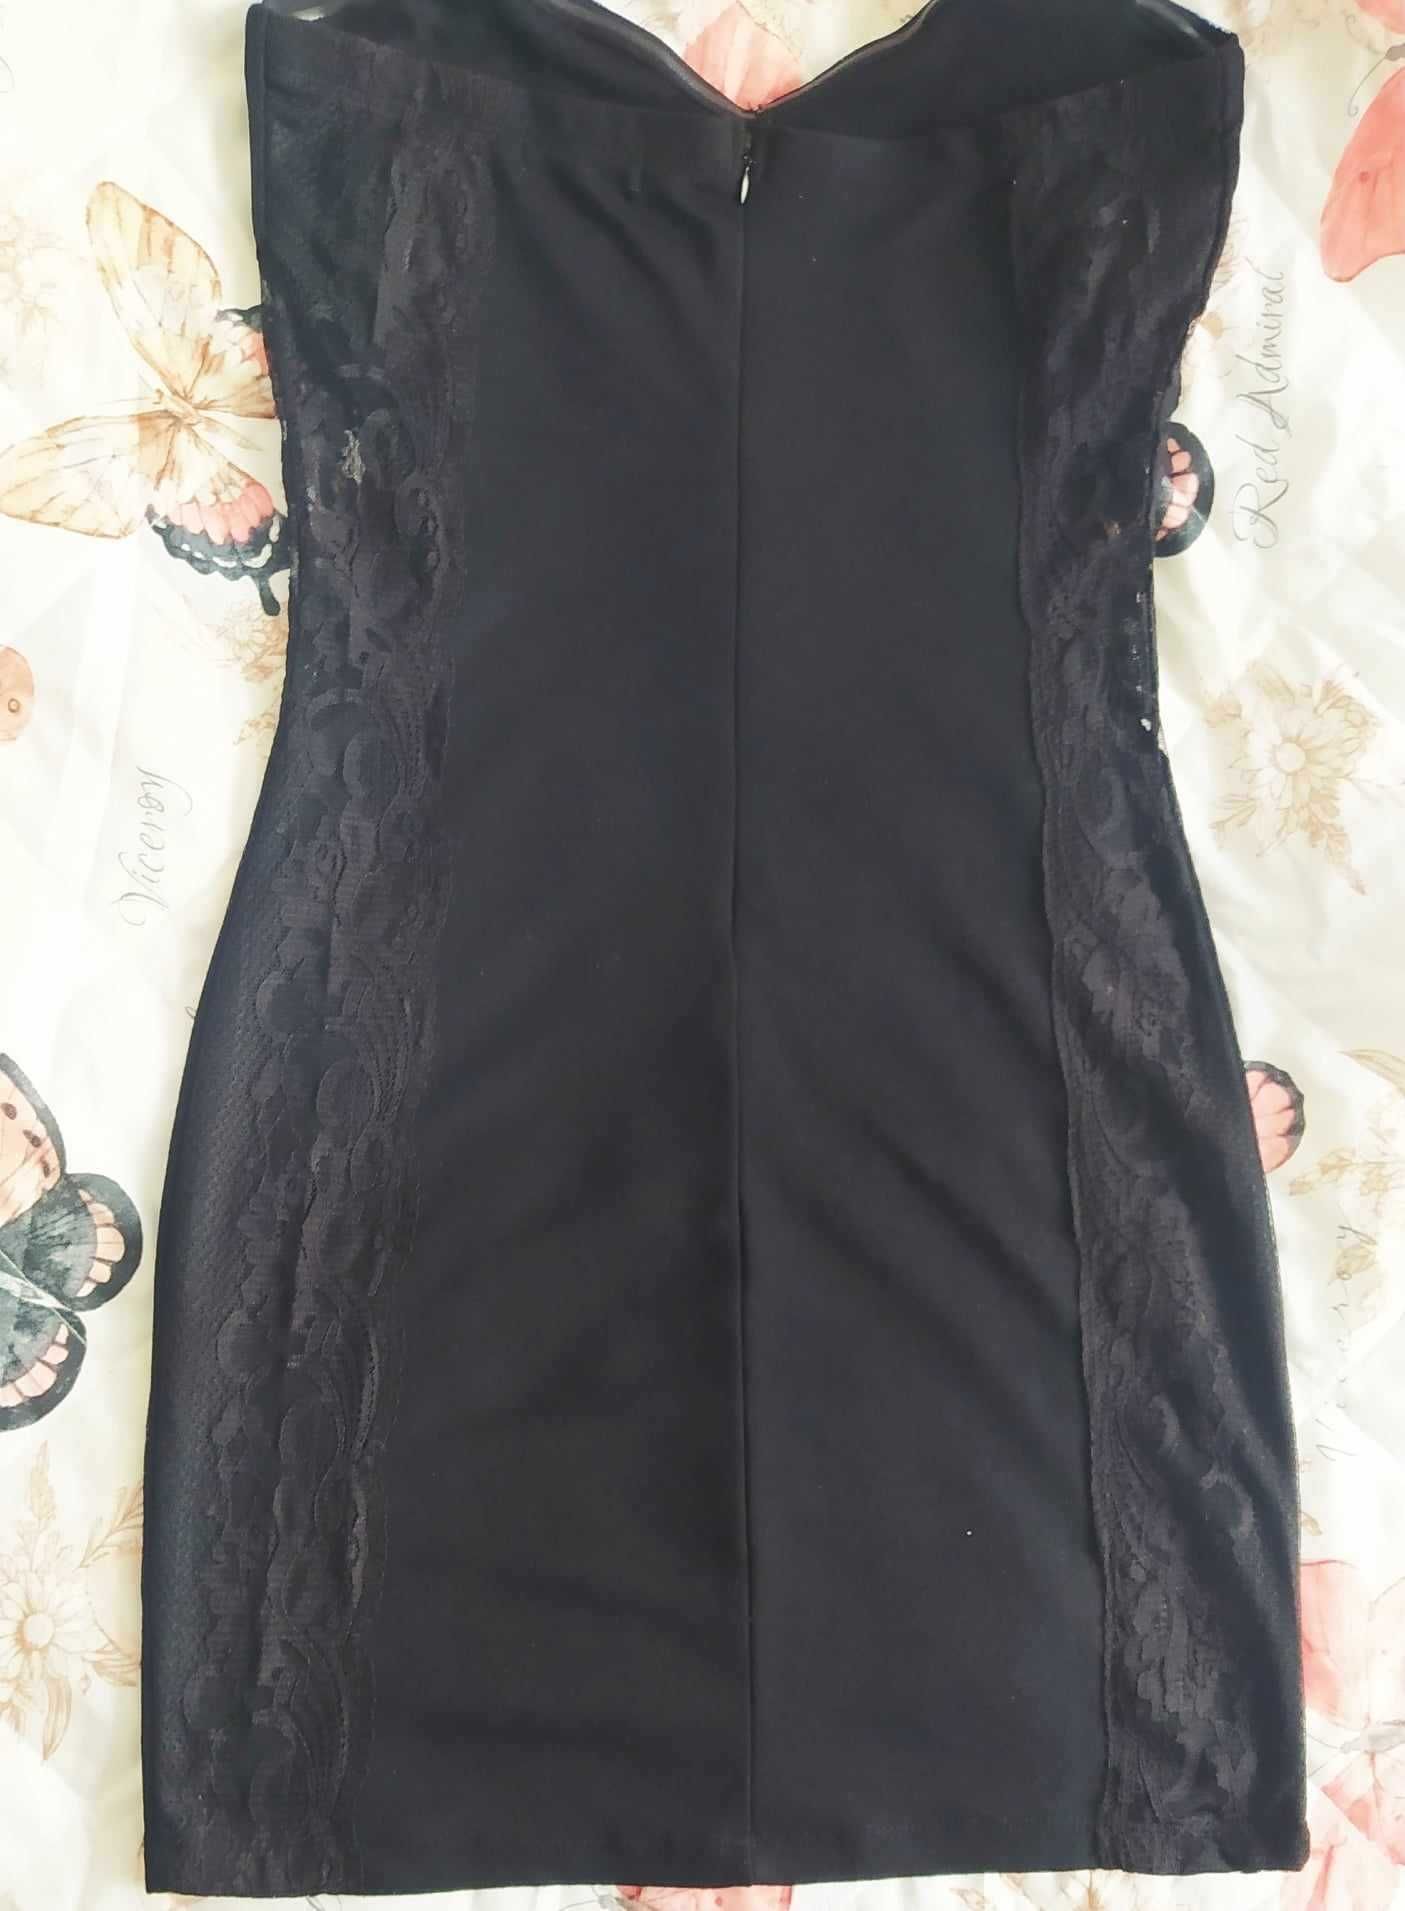 Малка черна рокля със странична дантела, М, нова